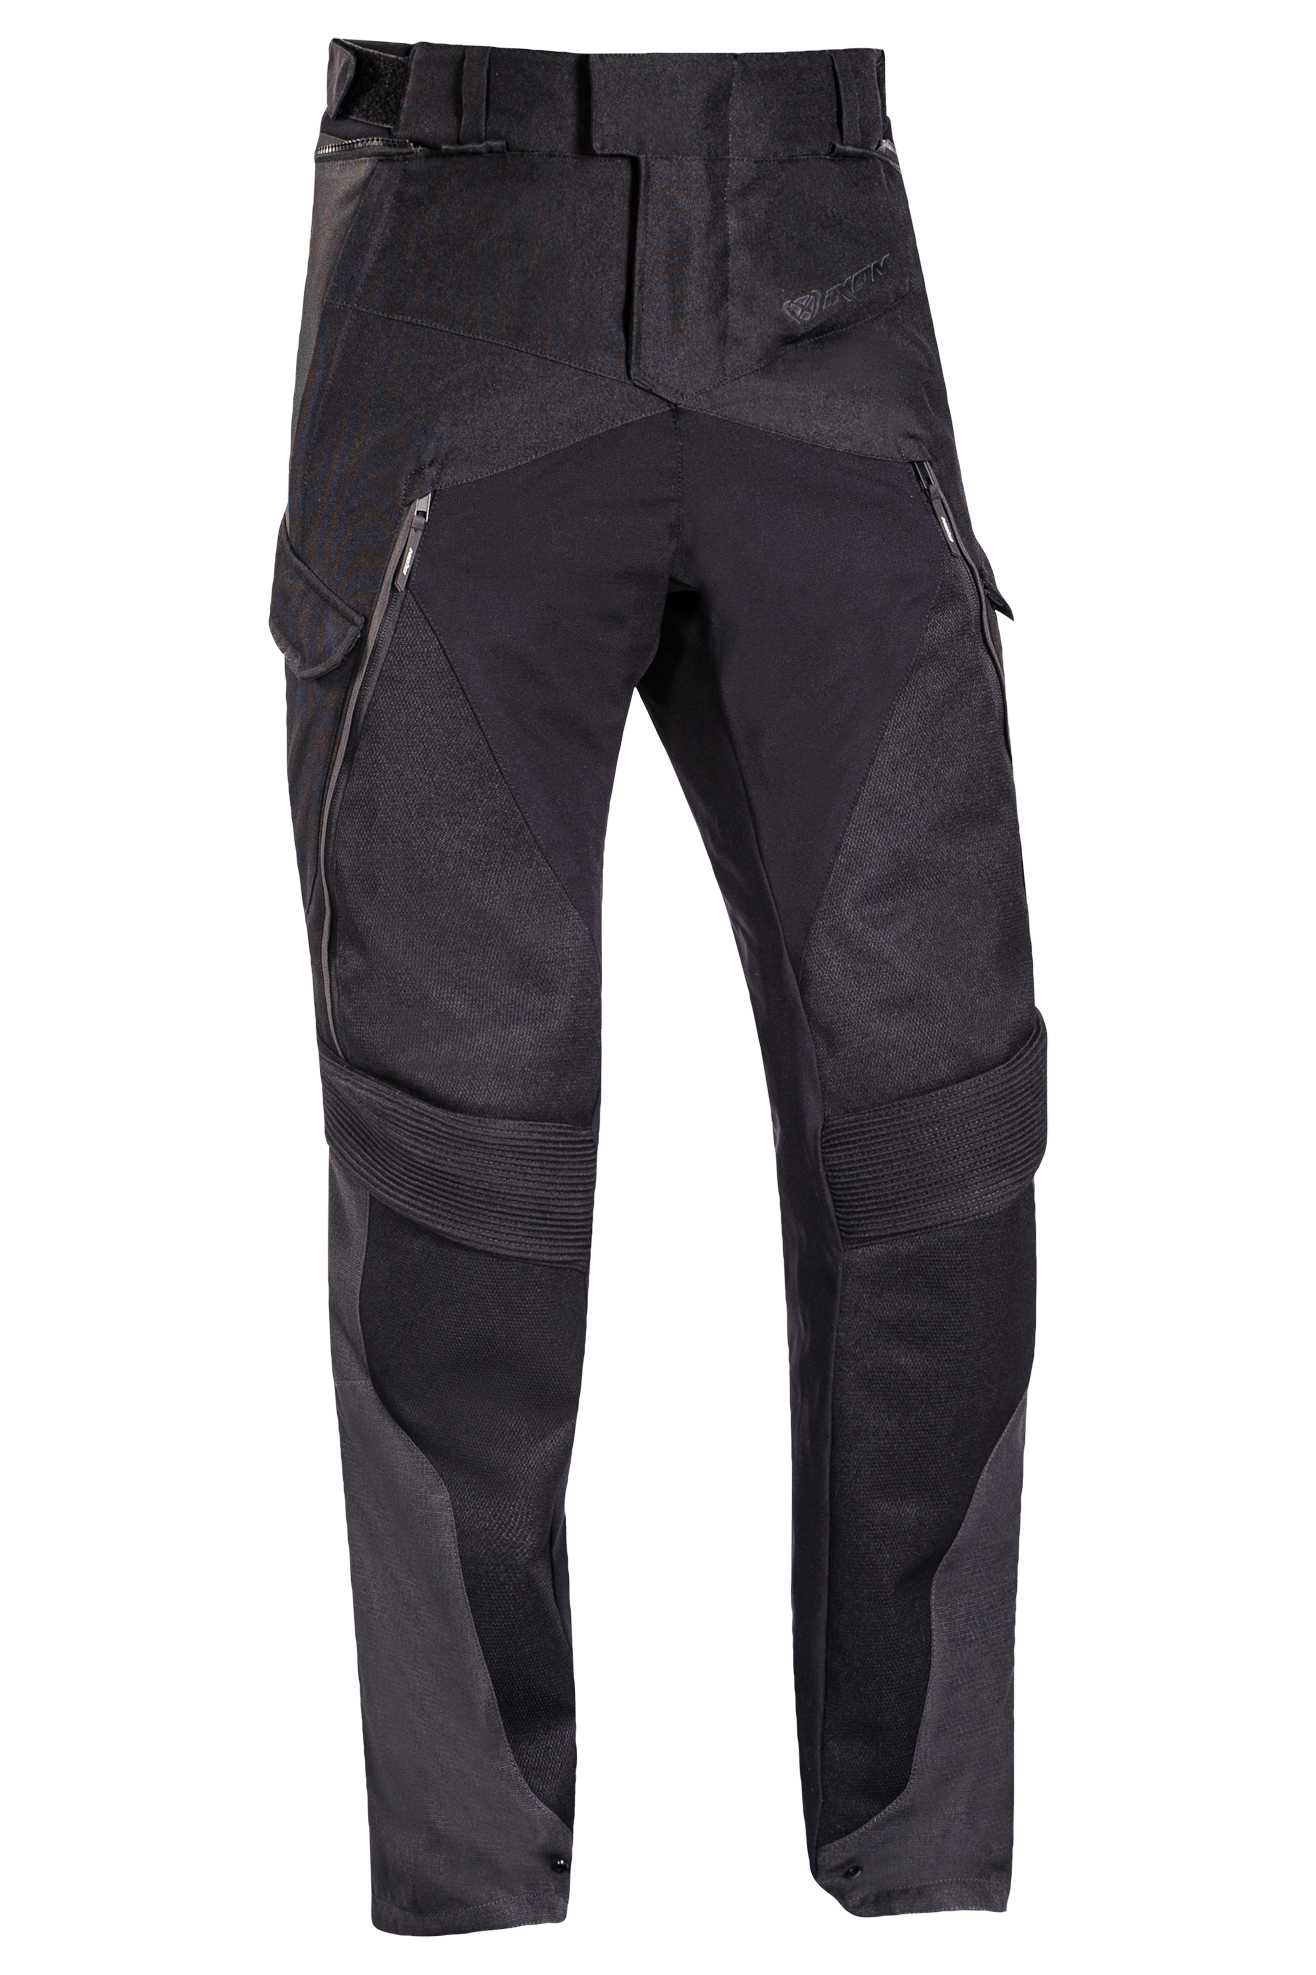 Ixon Pantalones de Moto  Eddas Negro-Antracita